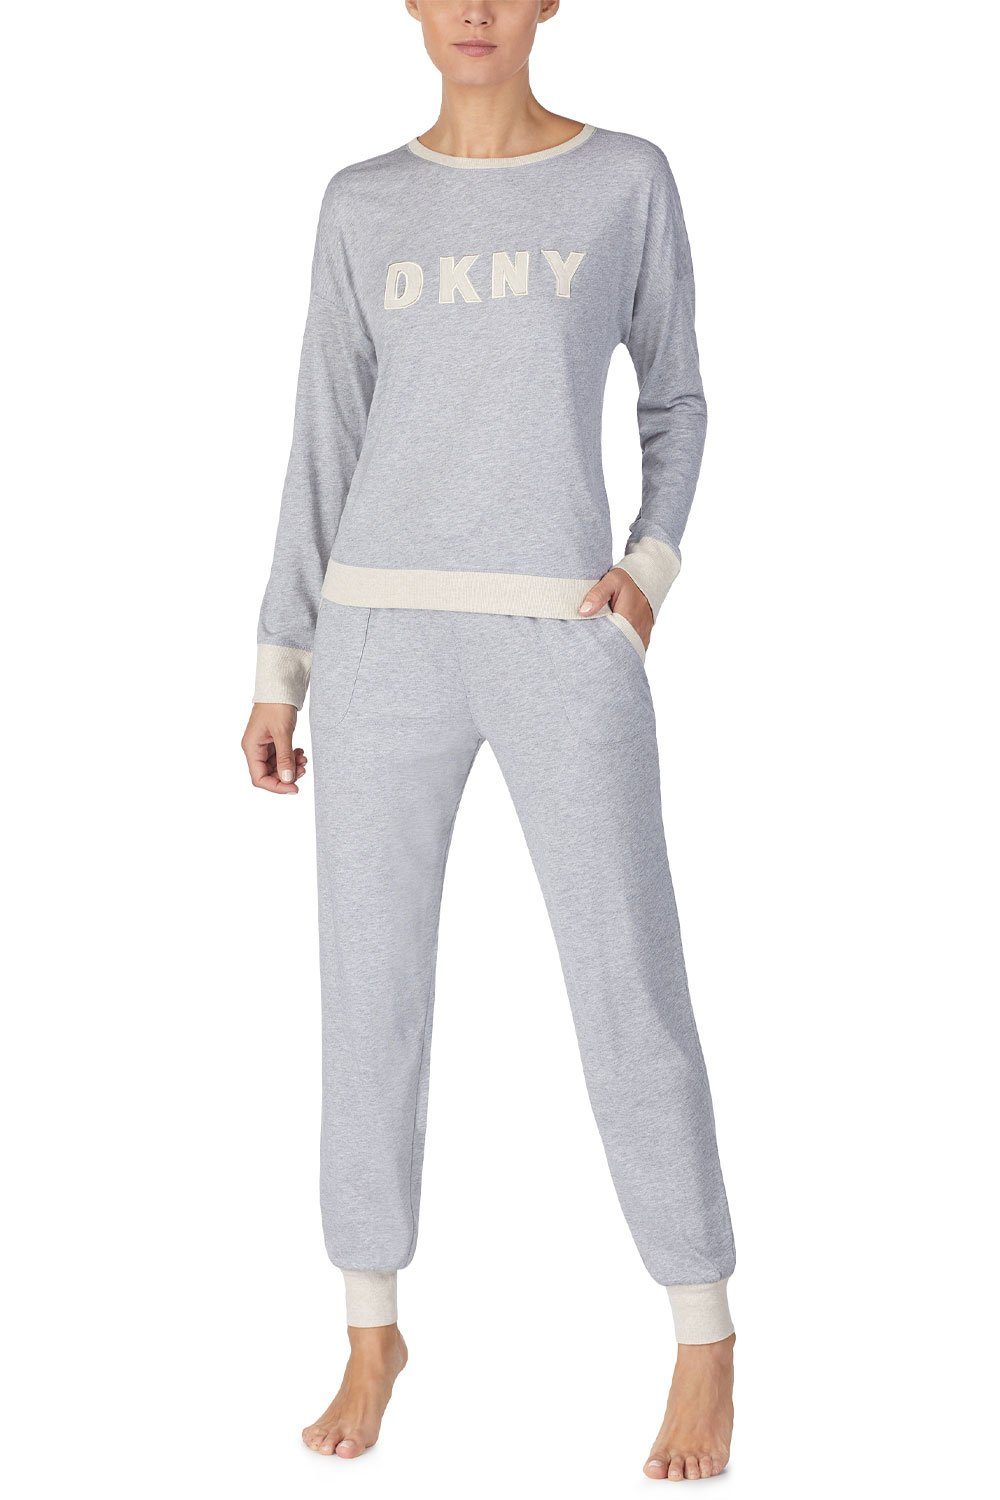 DKNY Pyjama Top & Jogger Set YI2919259 grey